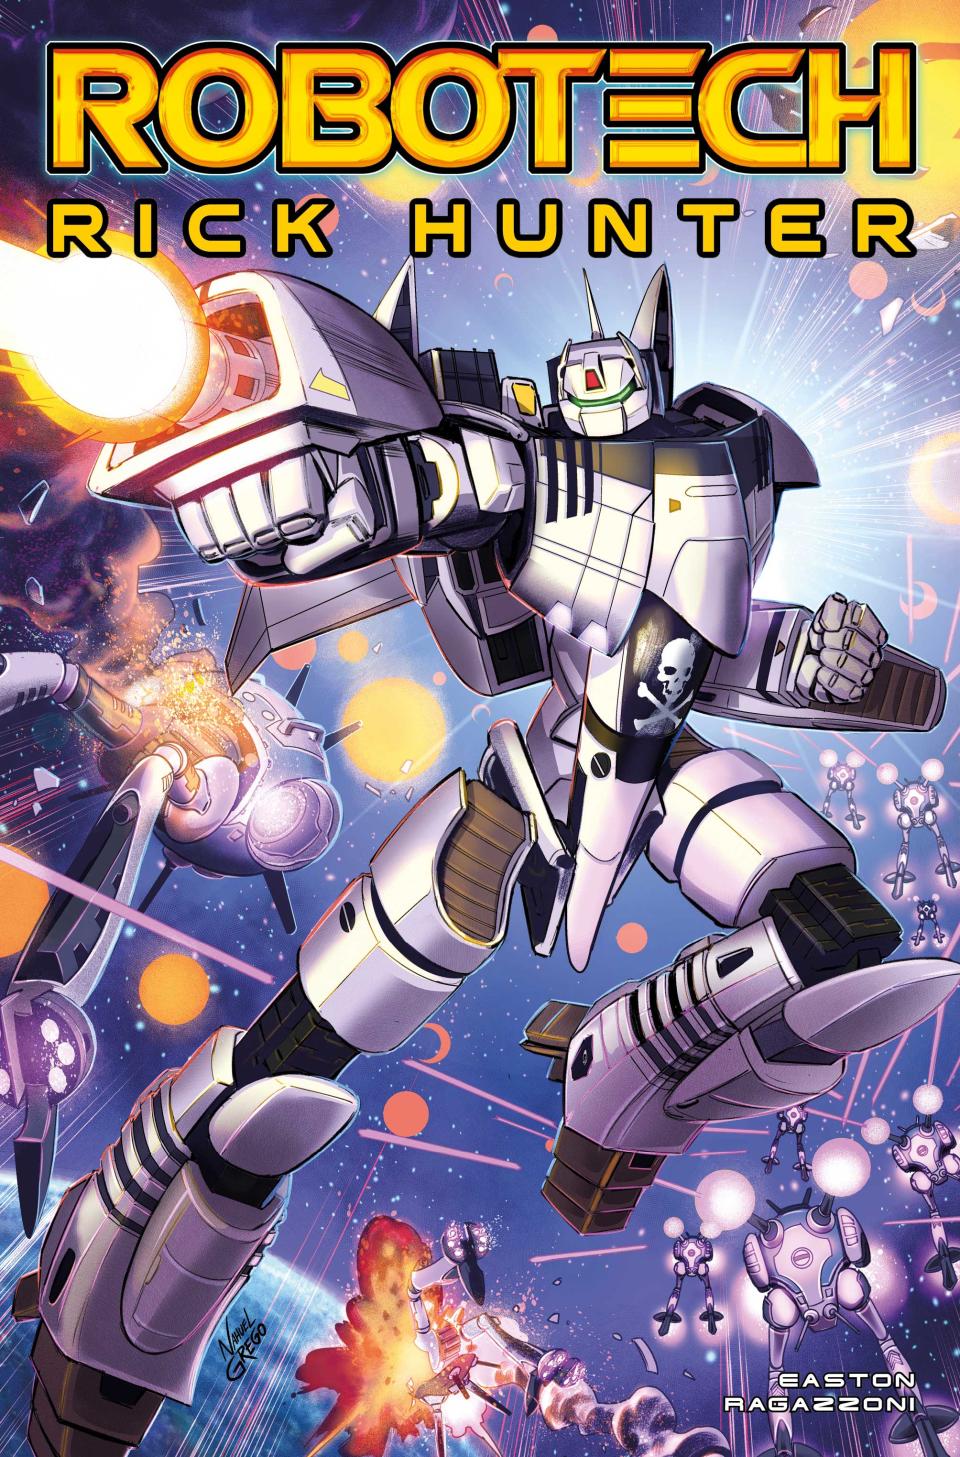 Nahuel Grego's cover for Robotech: Rick Hunter #1.